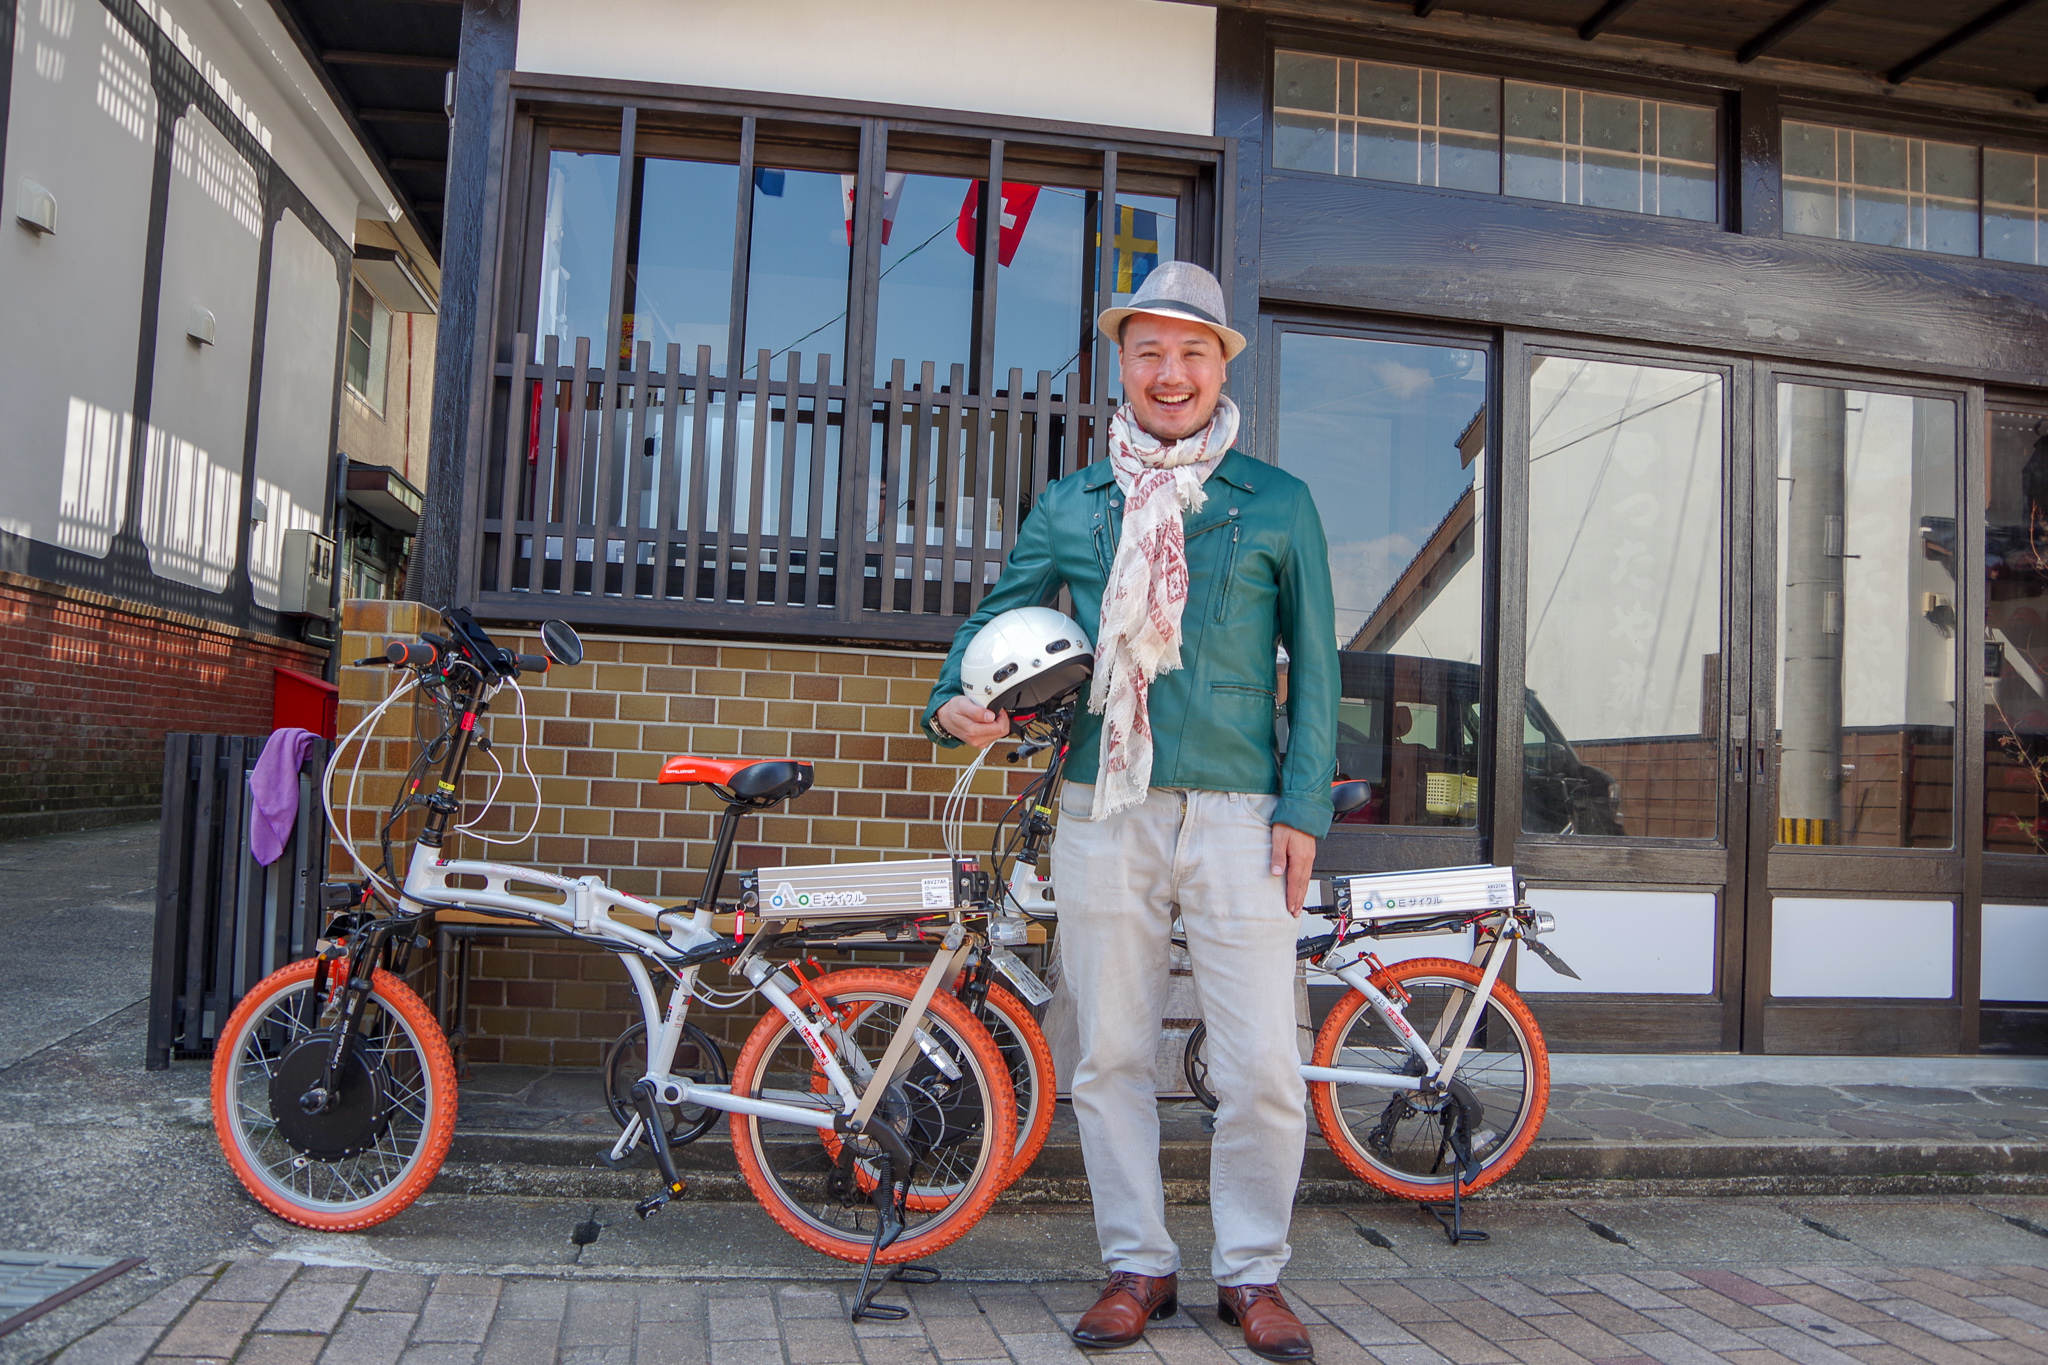 レンタル電動バイクで、壱岐の漁師町・勝本を回ってみよう！ LAMP壱岐の支配人・セコが勝本を観光してみました。